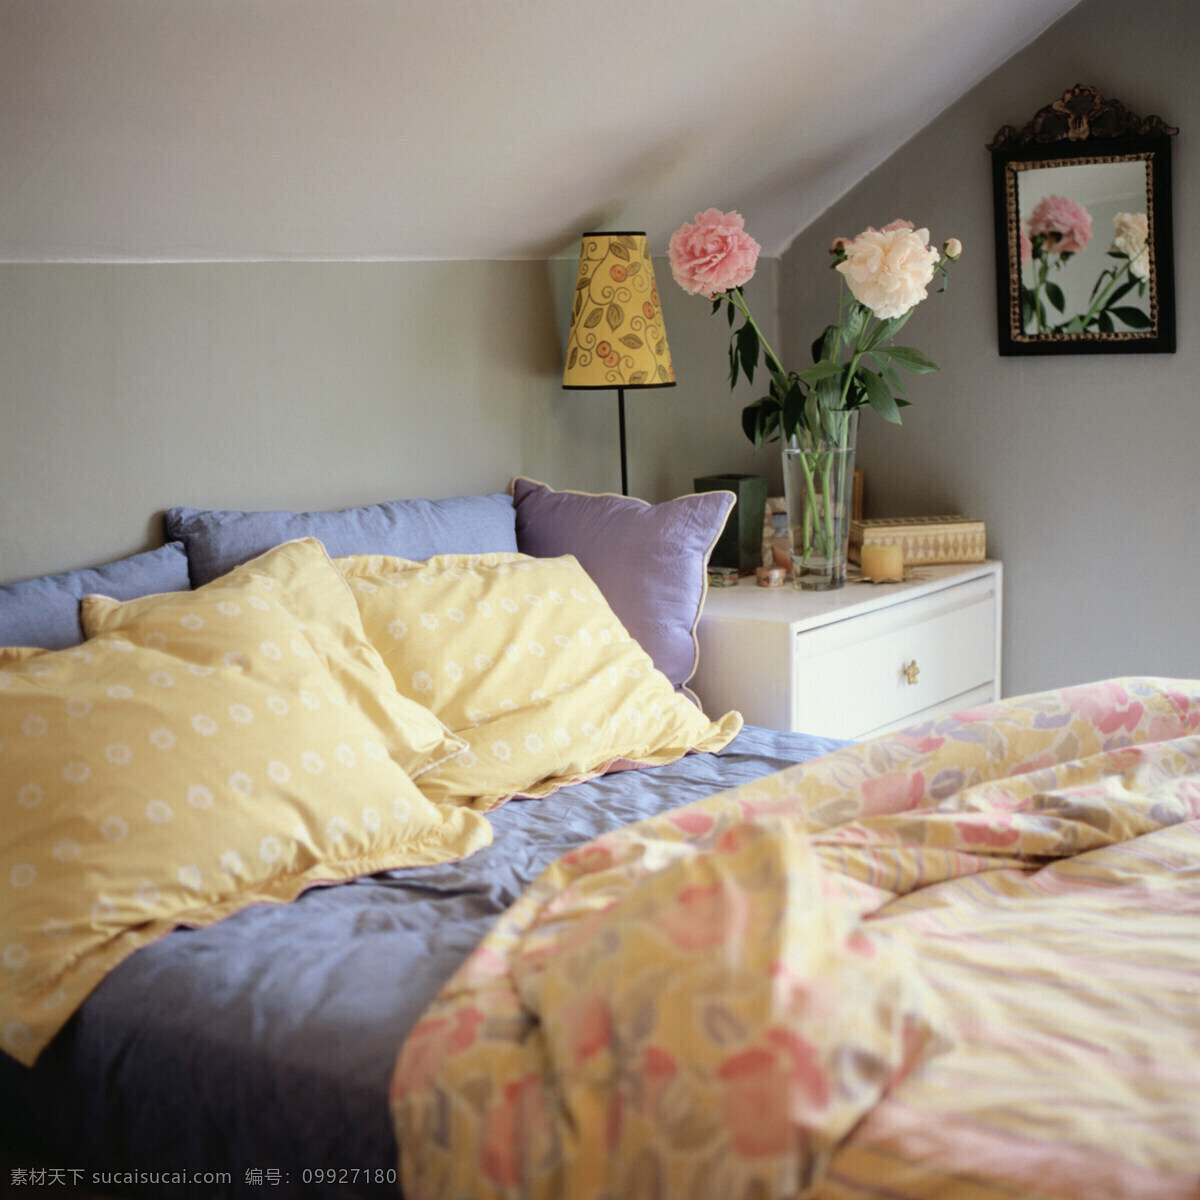 卧室 窗 床 床头柜 灯 建筑 建筑园林 可爱 欧式 装修 装潢 温馨 漂亮 室内摄影 摄影图库 装饰素材 灯饰素材